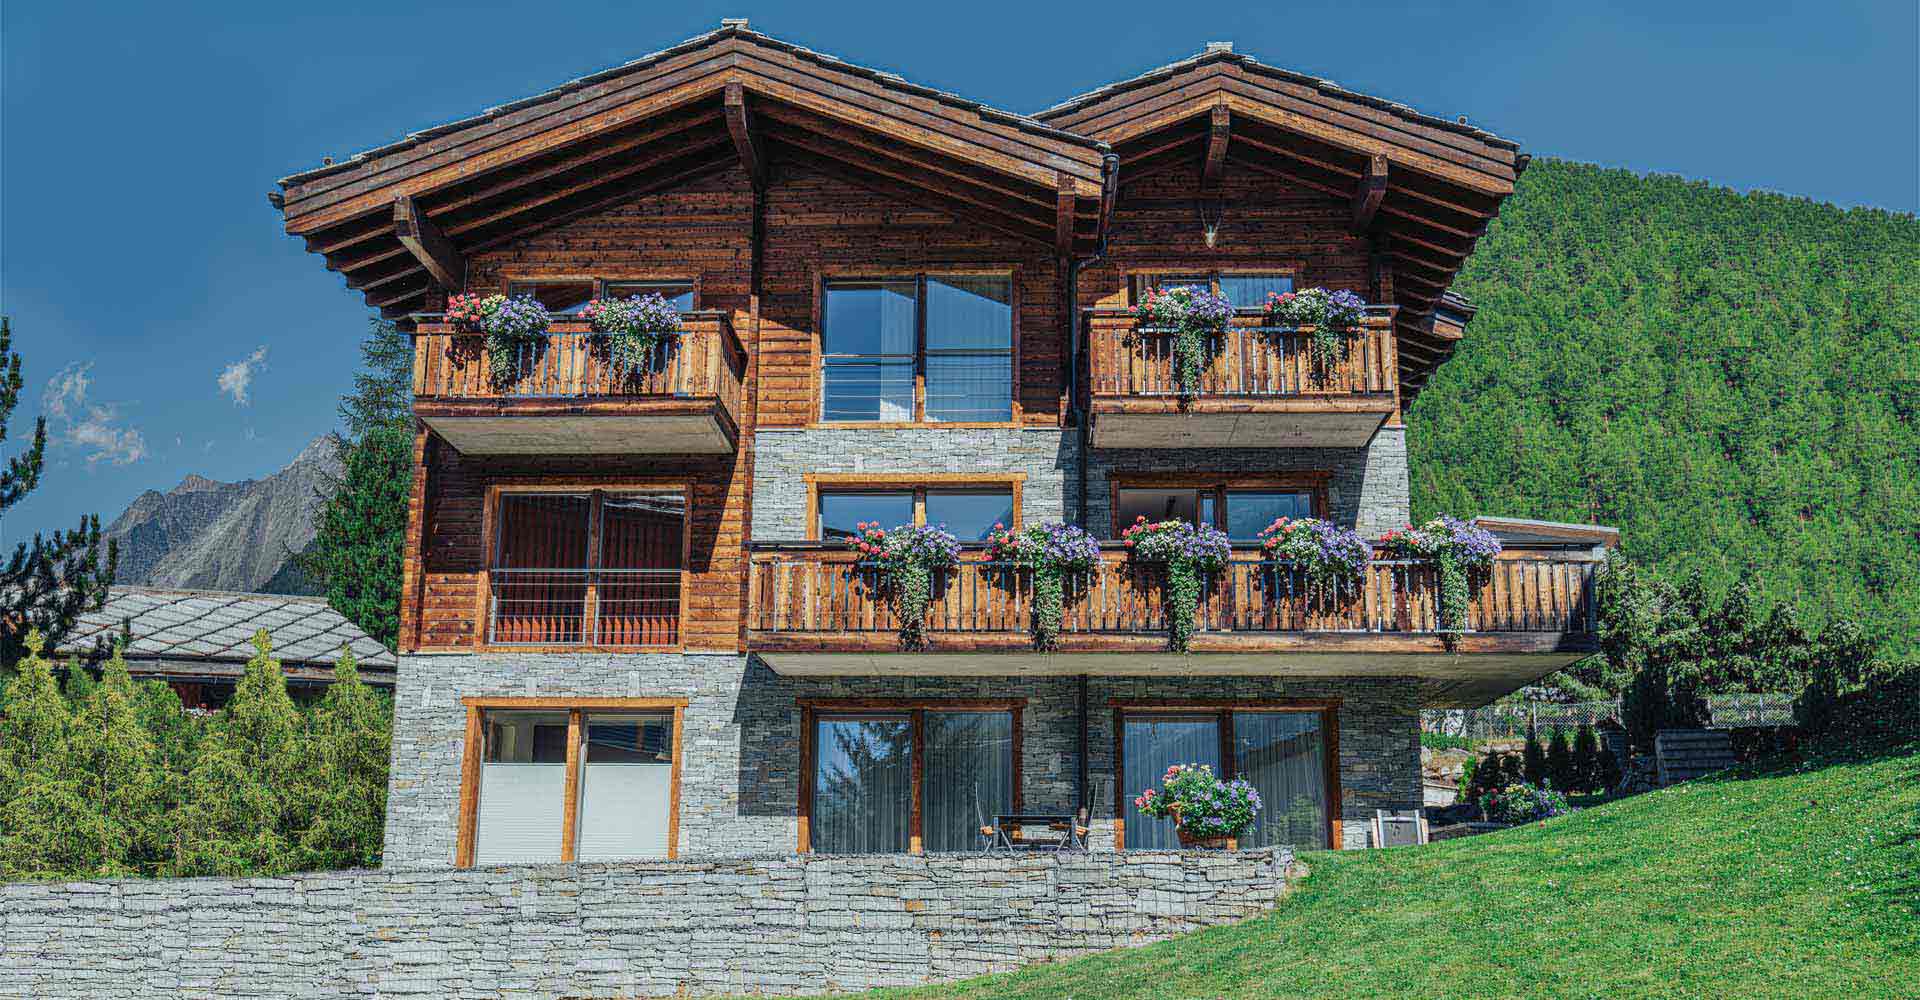 Rent a modern holiday flat in Zermatt